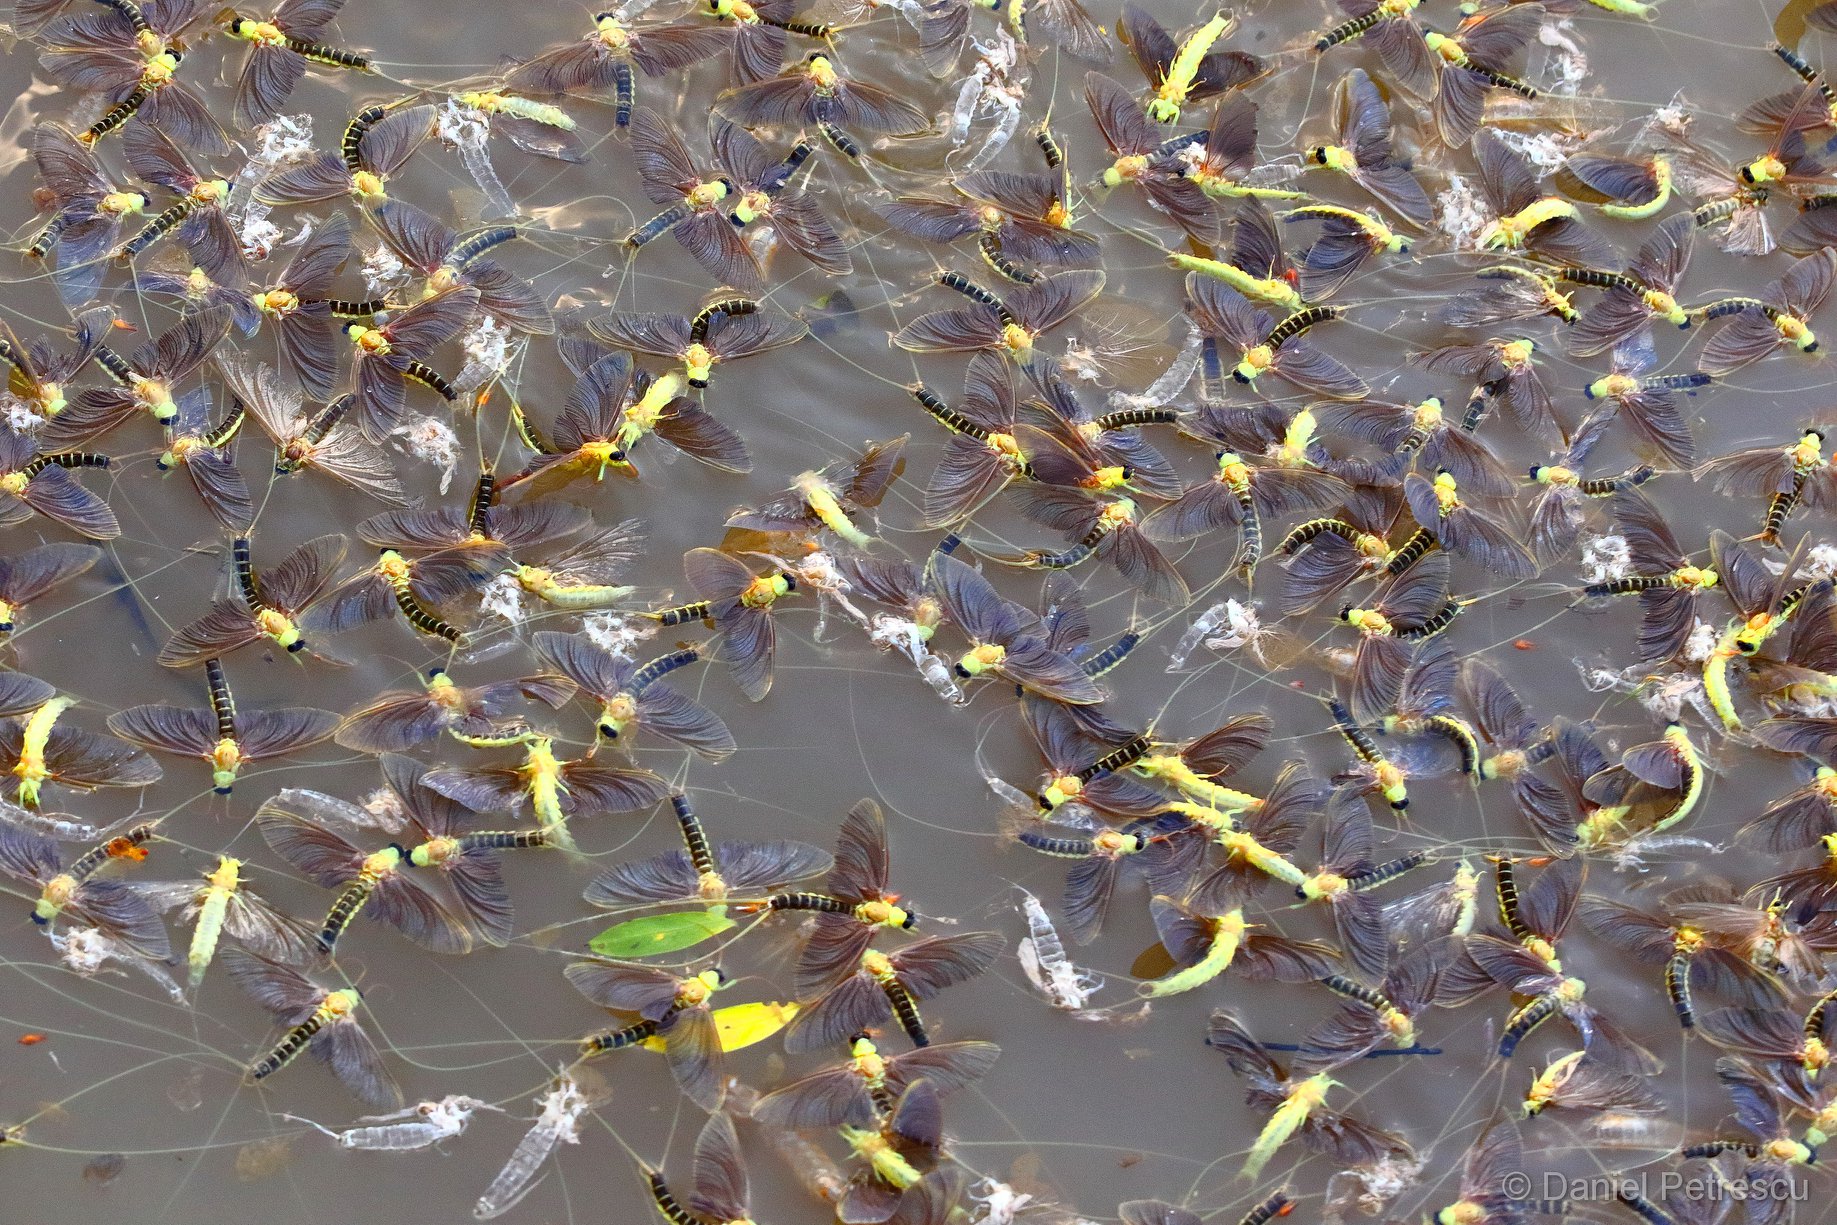 Delta sălbatică | Spectacol unicat oferit de insecte zburătoare cunoscute sub numele de rusalii sau efemeride